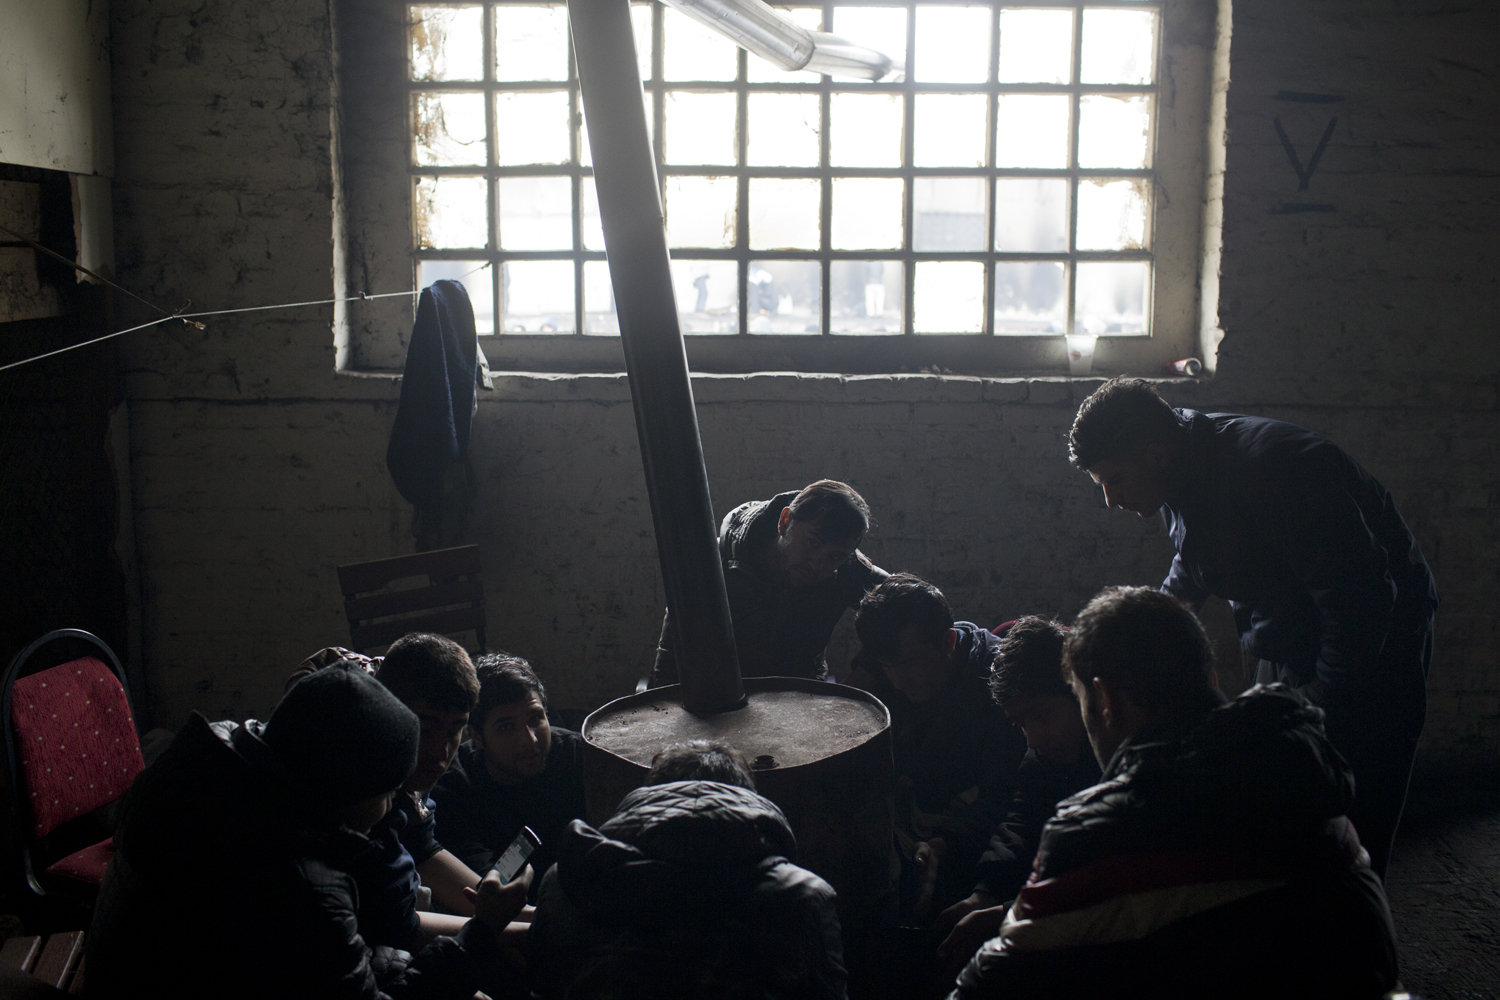 Refugiados de Afghanistan se calientan con un tambor de aceite en un almacén abandonado en Belgrado, Serbia.